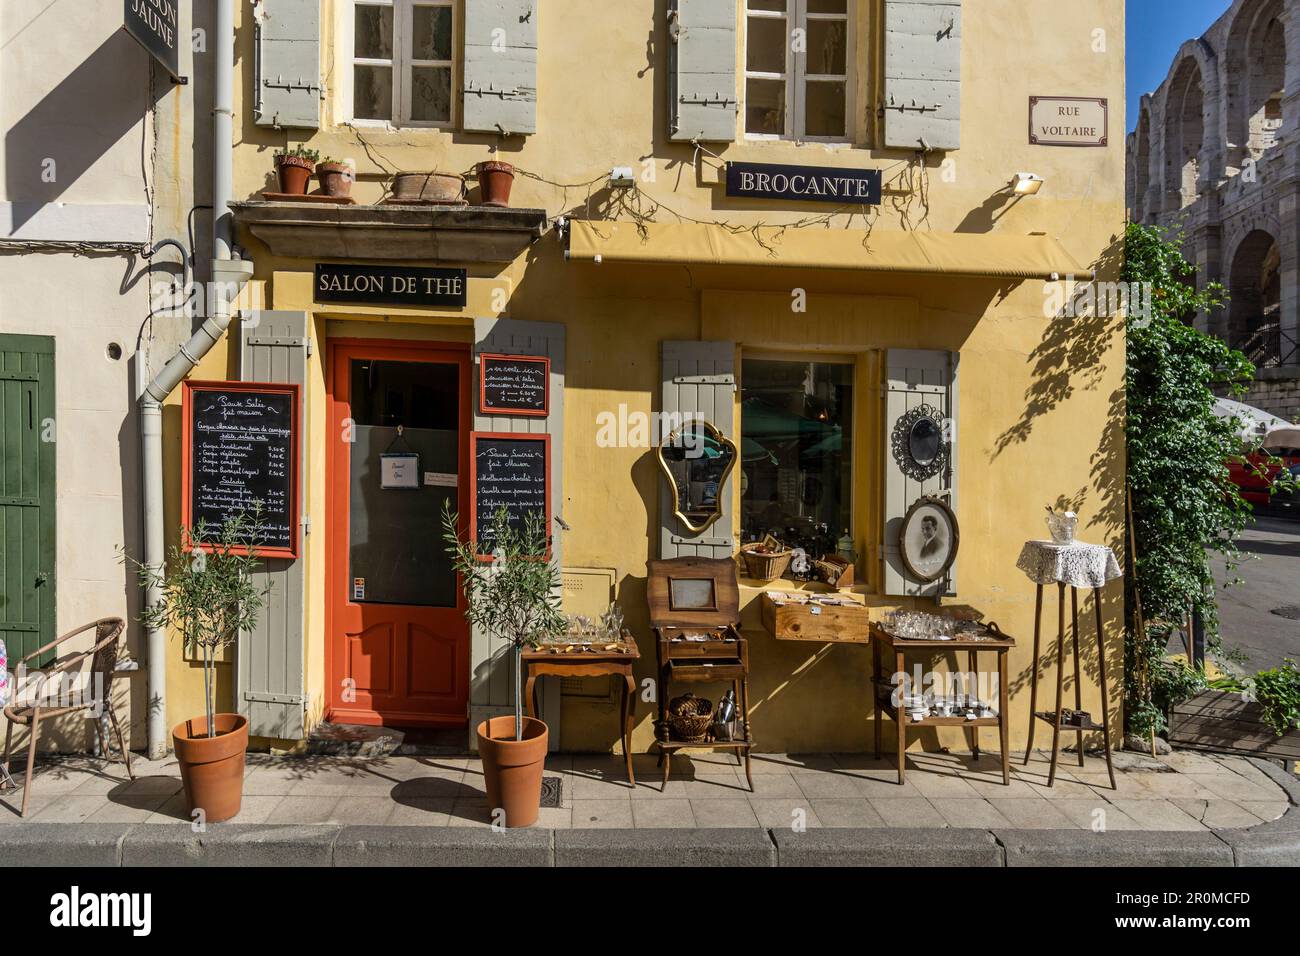 Teestube, Café, Antiquitätengeschäft in der Rue Voltaire, Arles, Provence, Frankreich Stockfoto